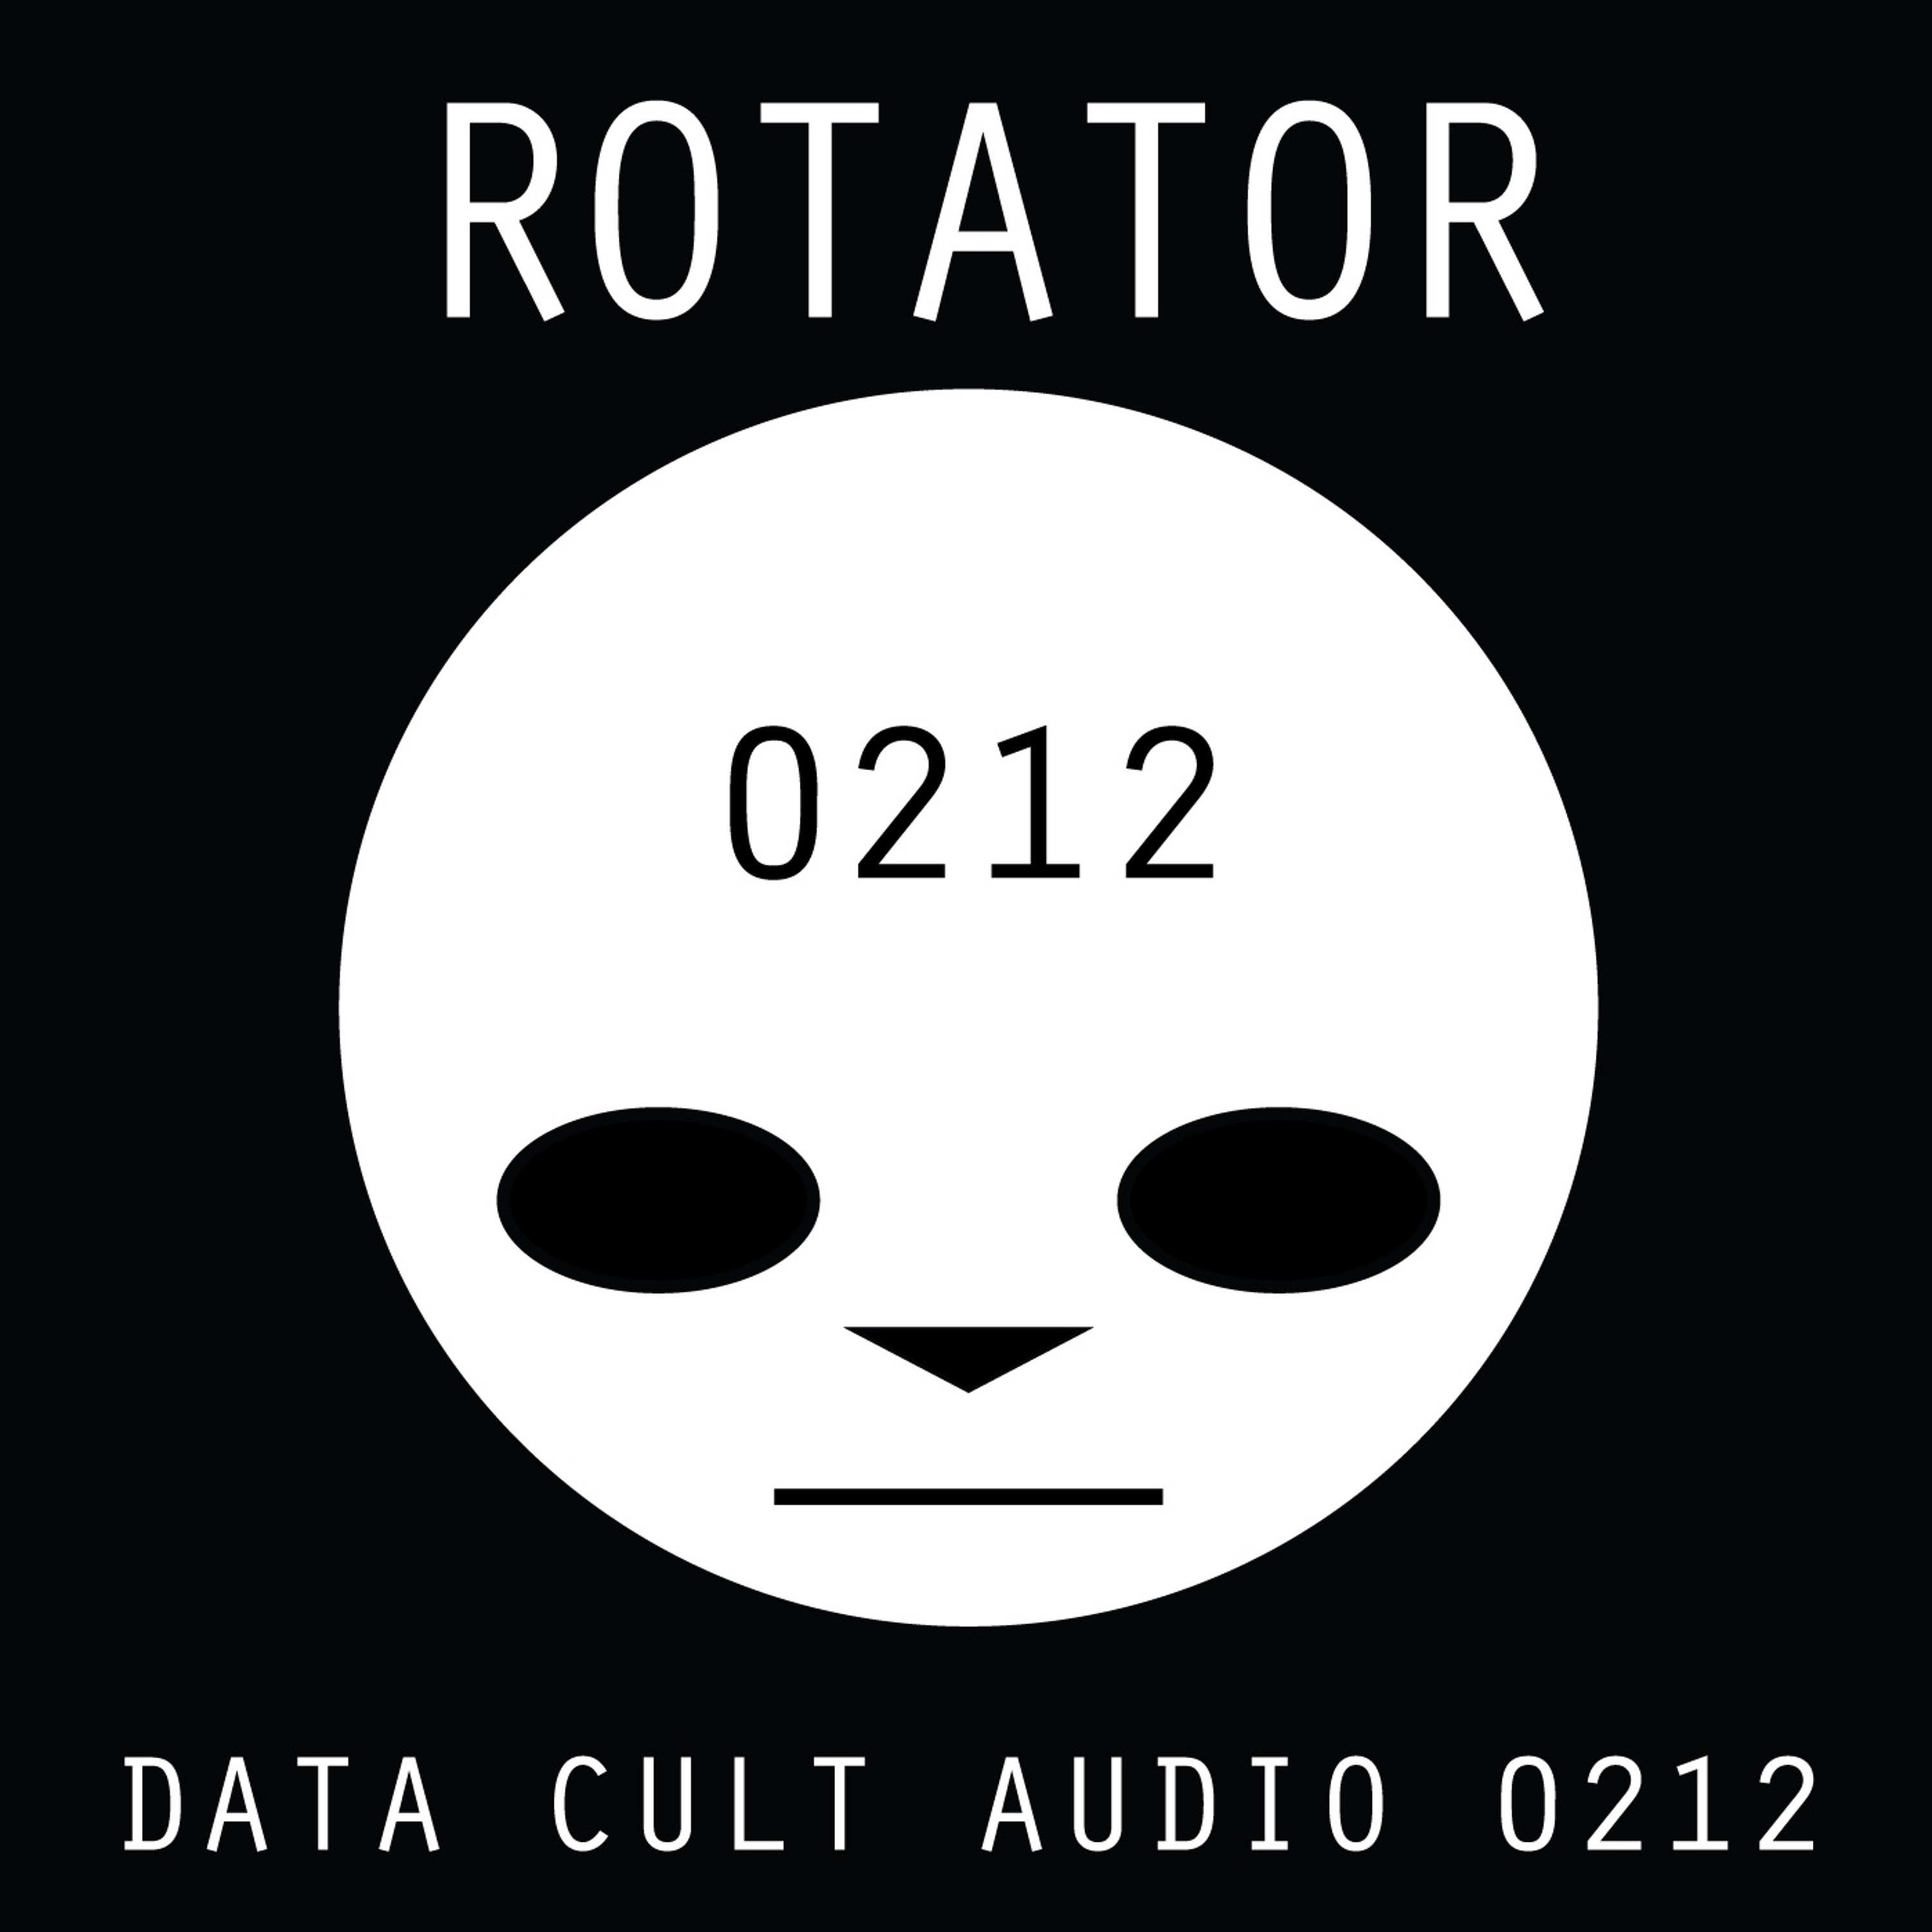 Data Cult Audio 0212 - ROTATOR